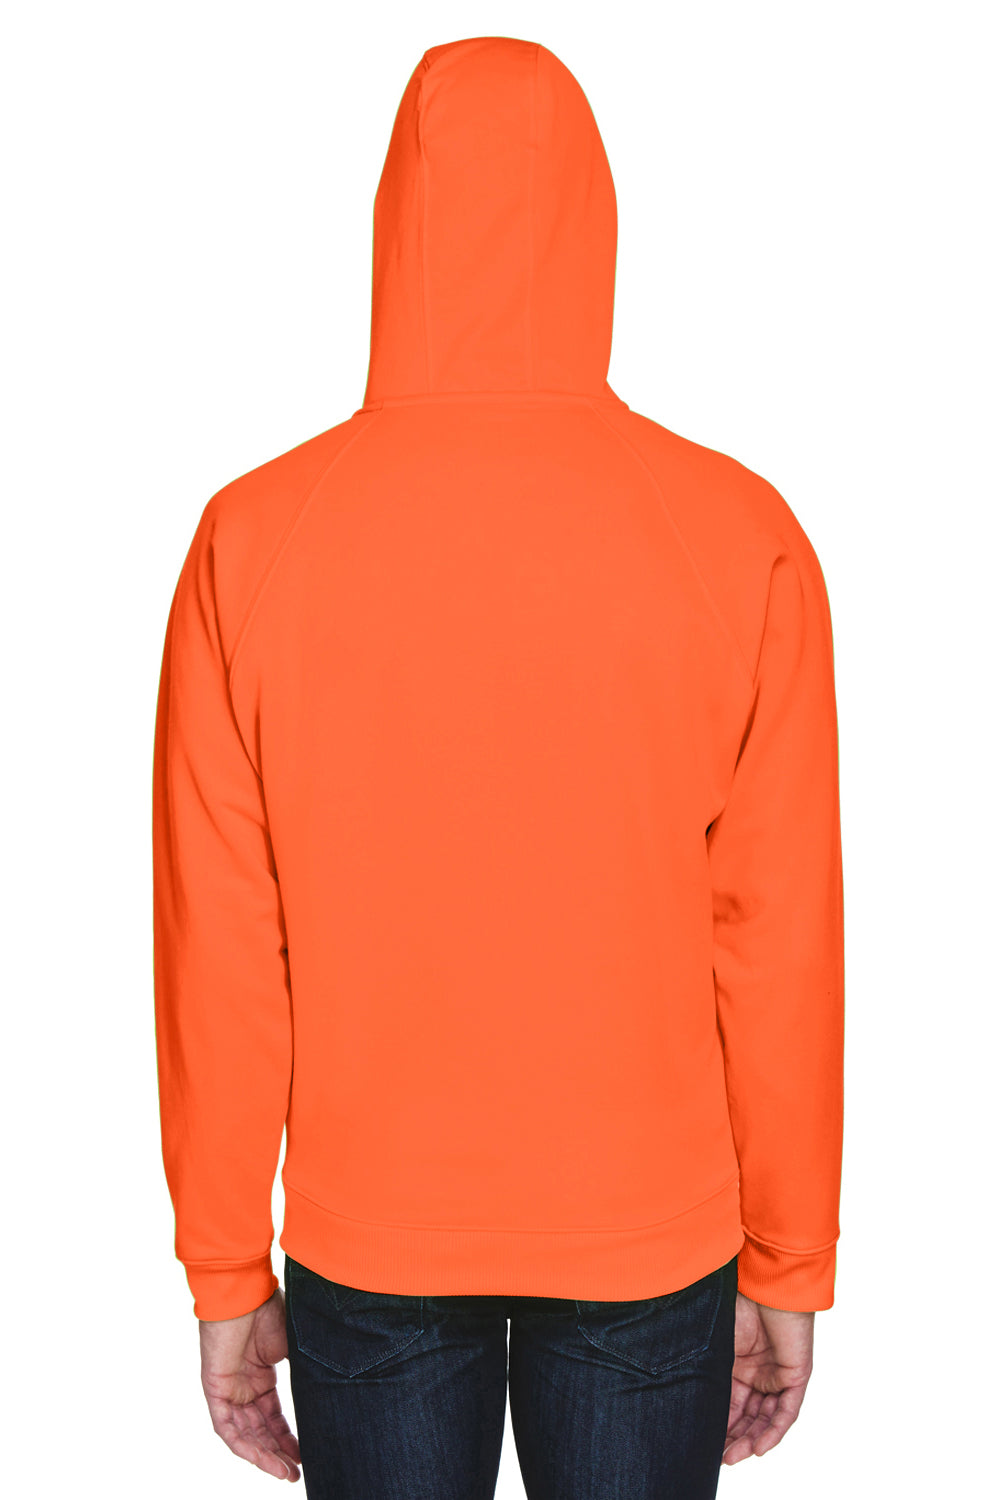 UltraClub 8463 Mens Rugged Wear Water Resistant Fleece Full Zip Hooded Sweatshirt Hoodie Bright Orange Back